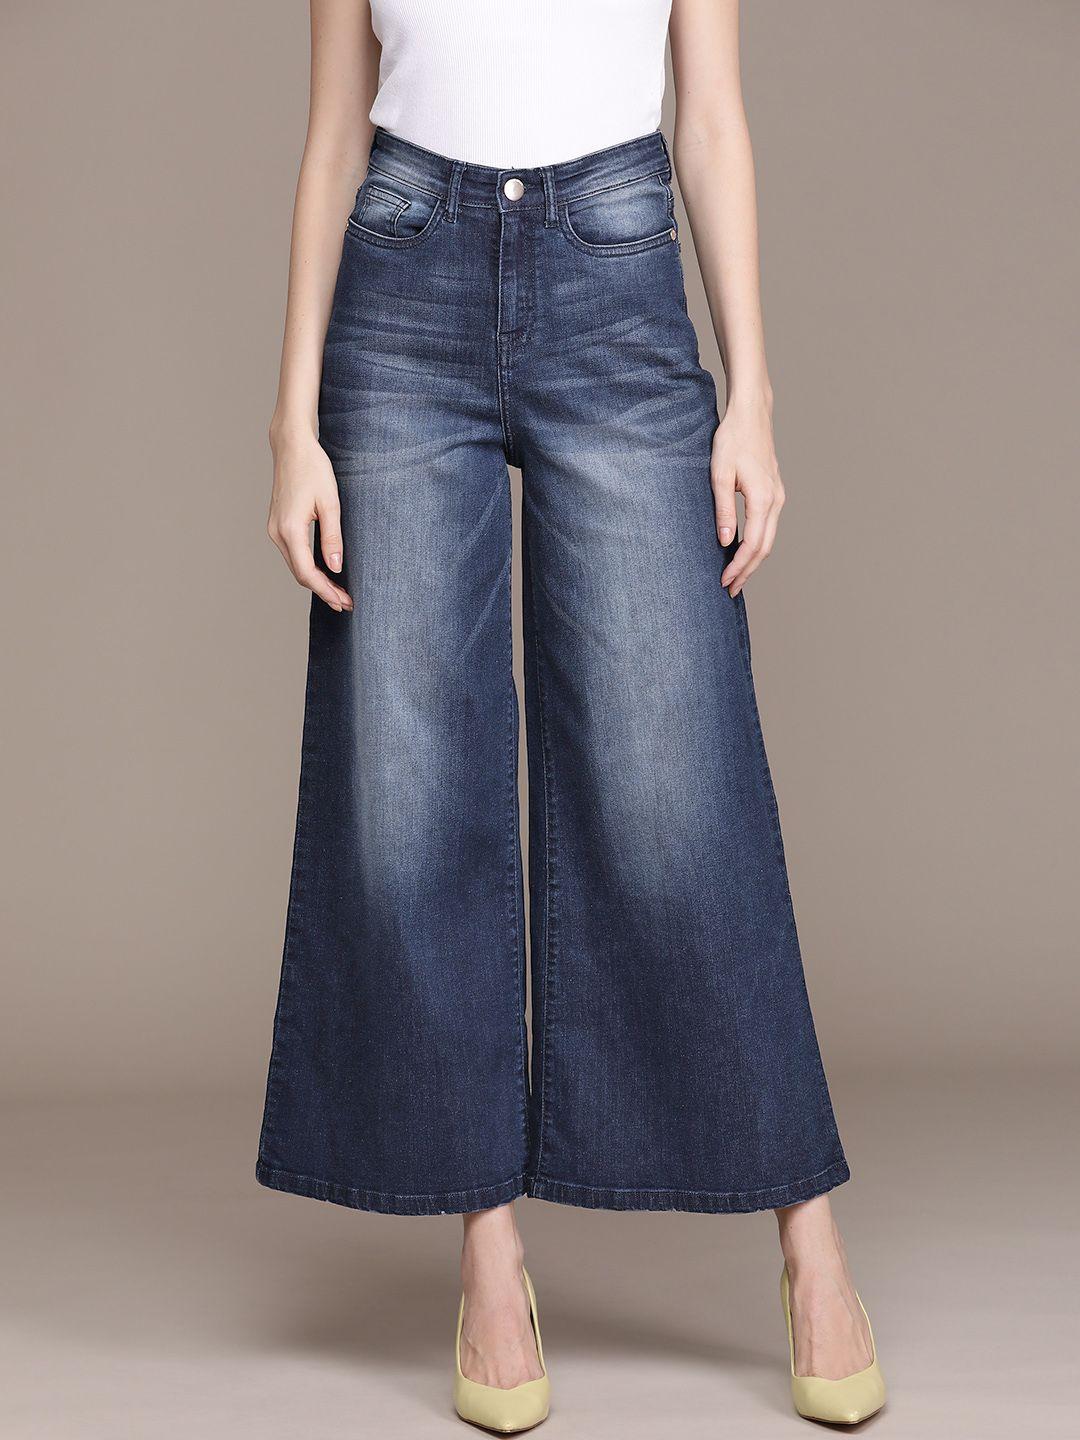 label ritu kumar women navy blue jean heavy fade stretchable jeans